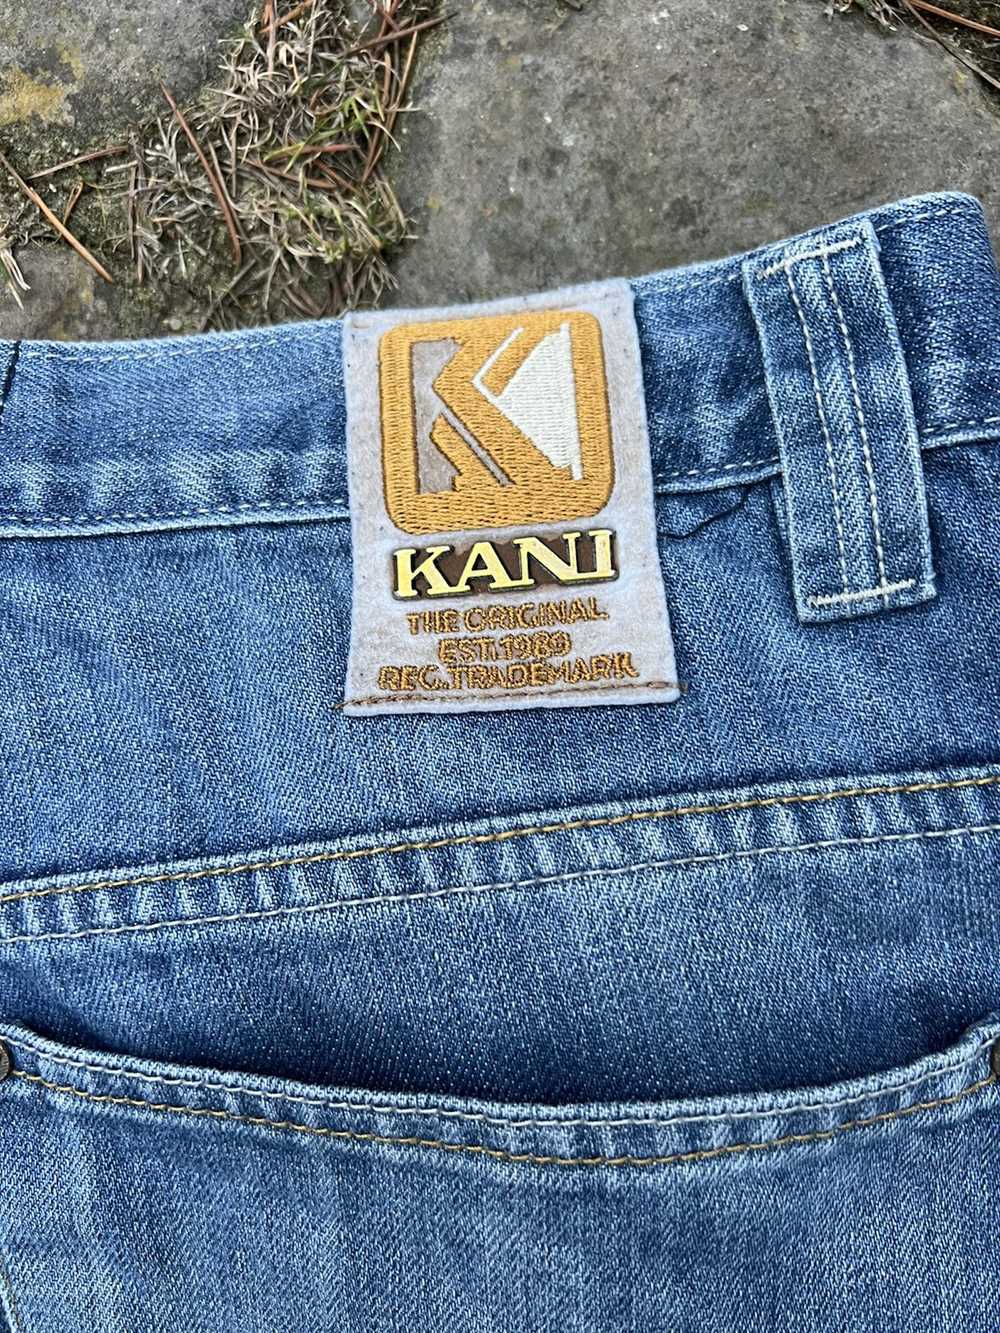 Karl Kani Vintage Karl Kani Jeans - image 5